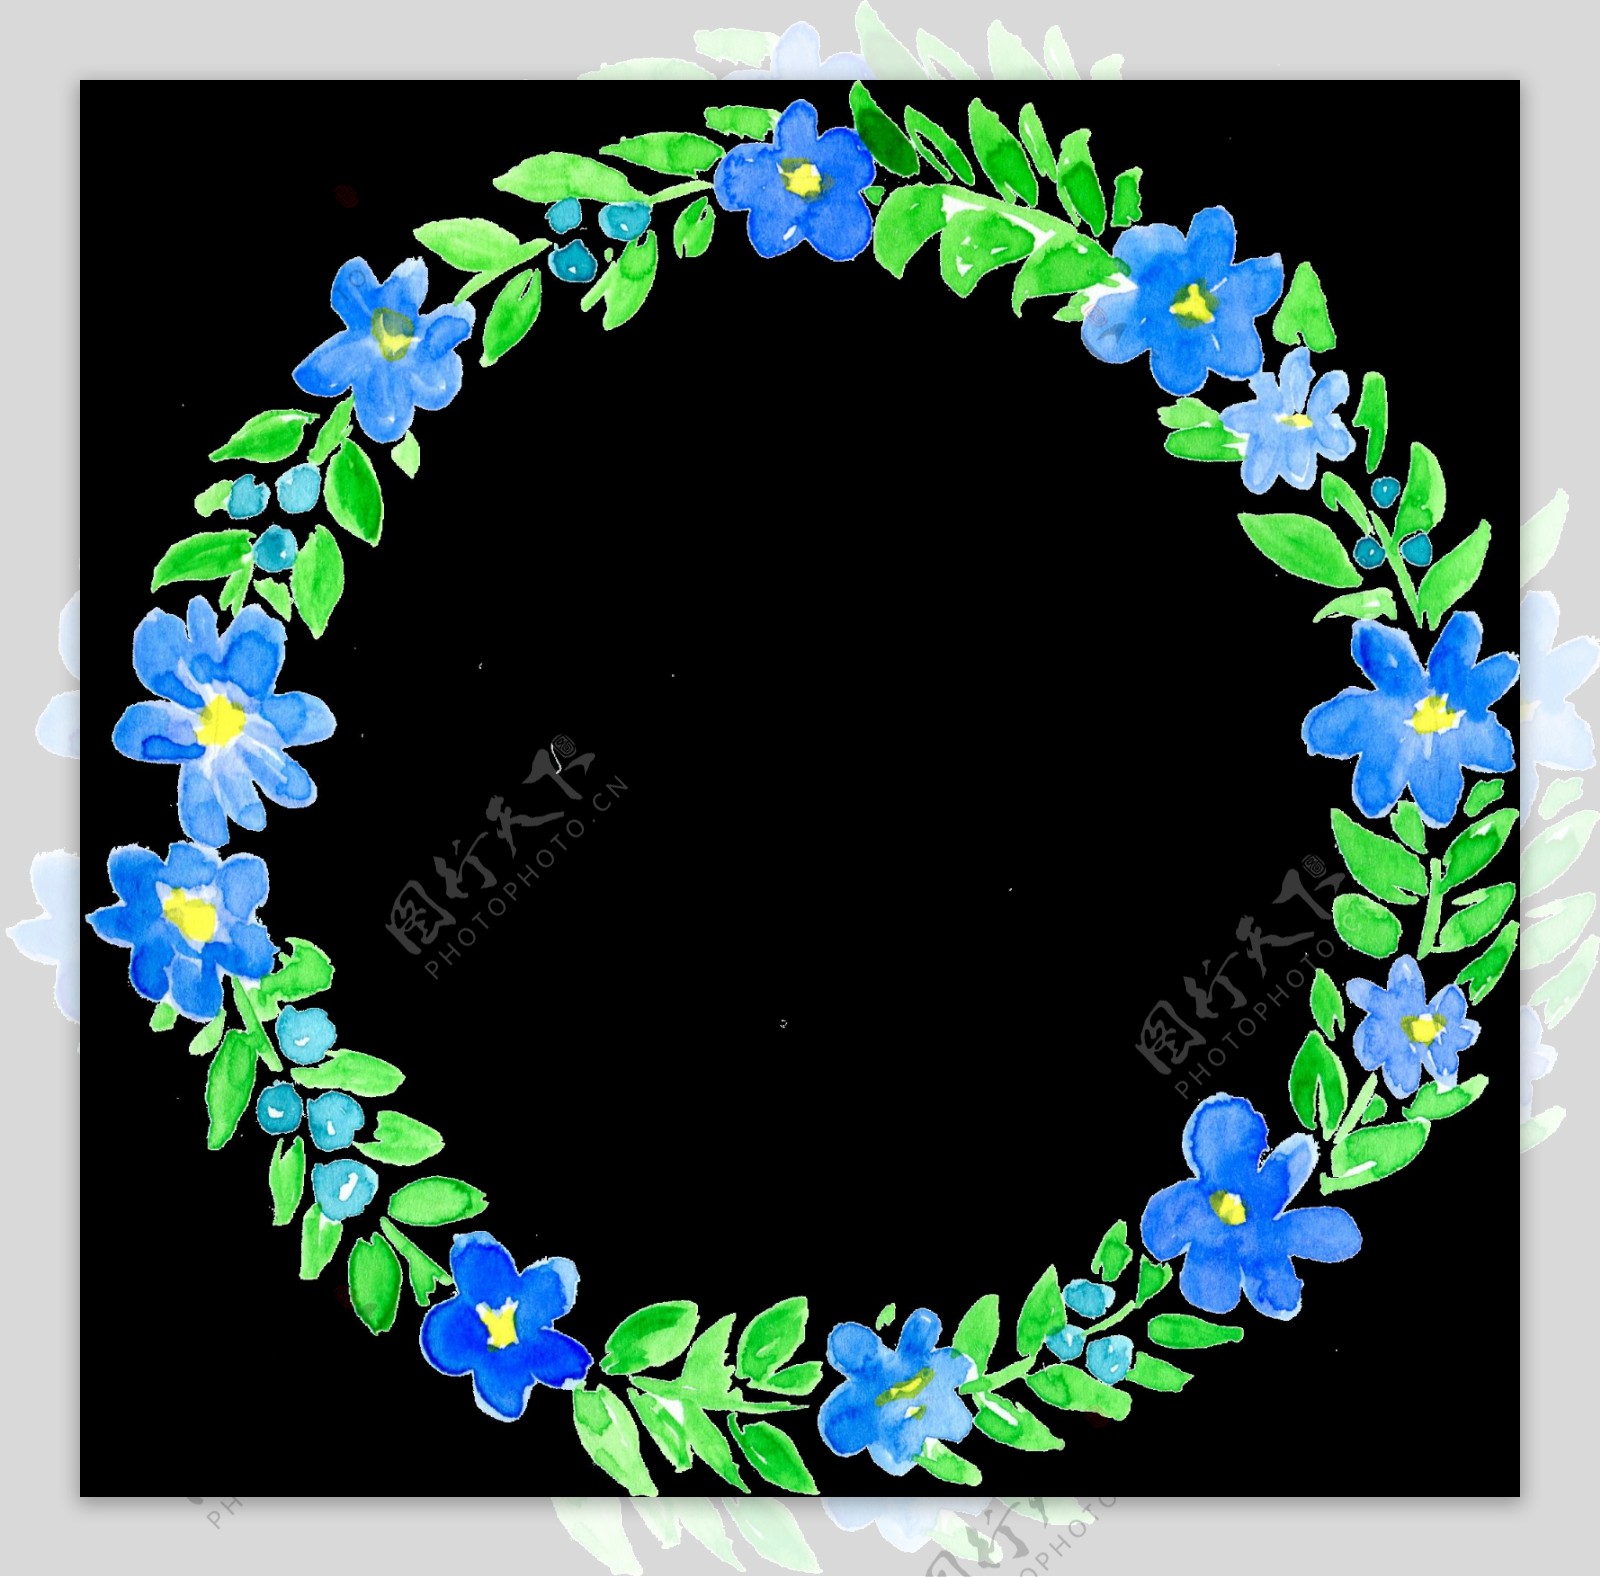 鲜艳蓝绿色树叶手绘花环装饰元素